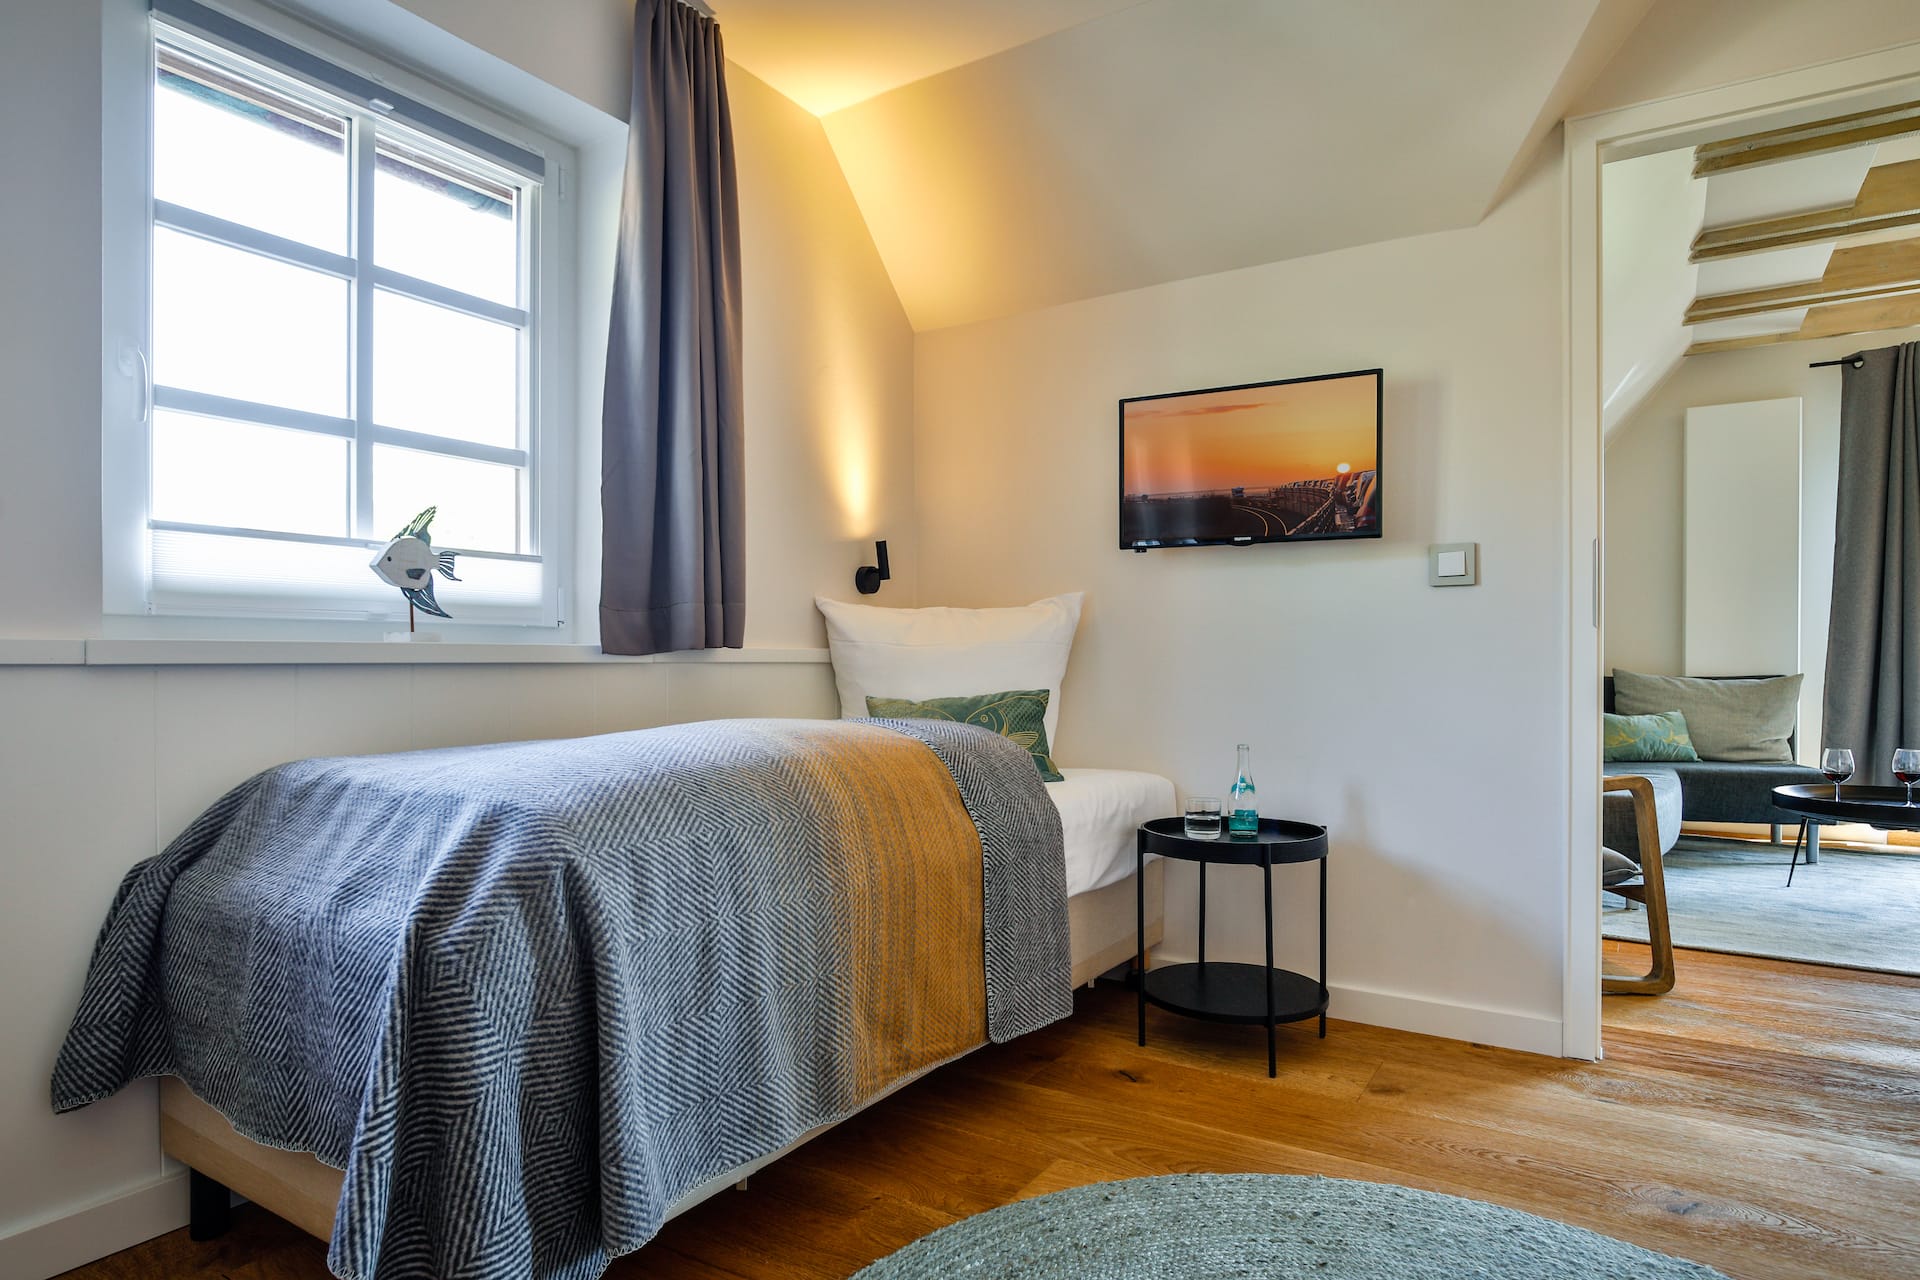 Einzelbett für Kind im Doppelzimmer 7 in Westerland auf Sylt im Hotel Sylter Hahn